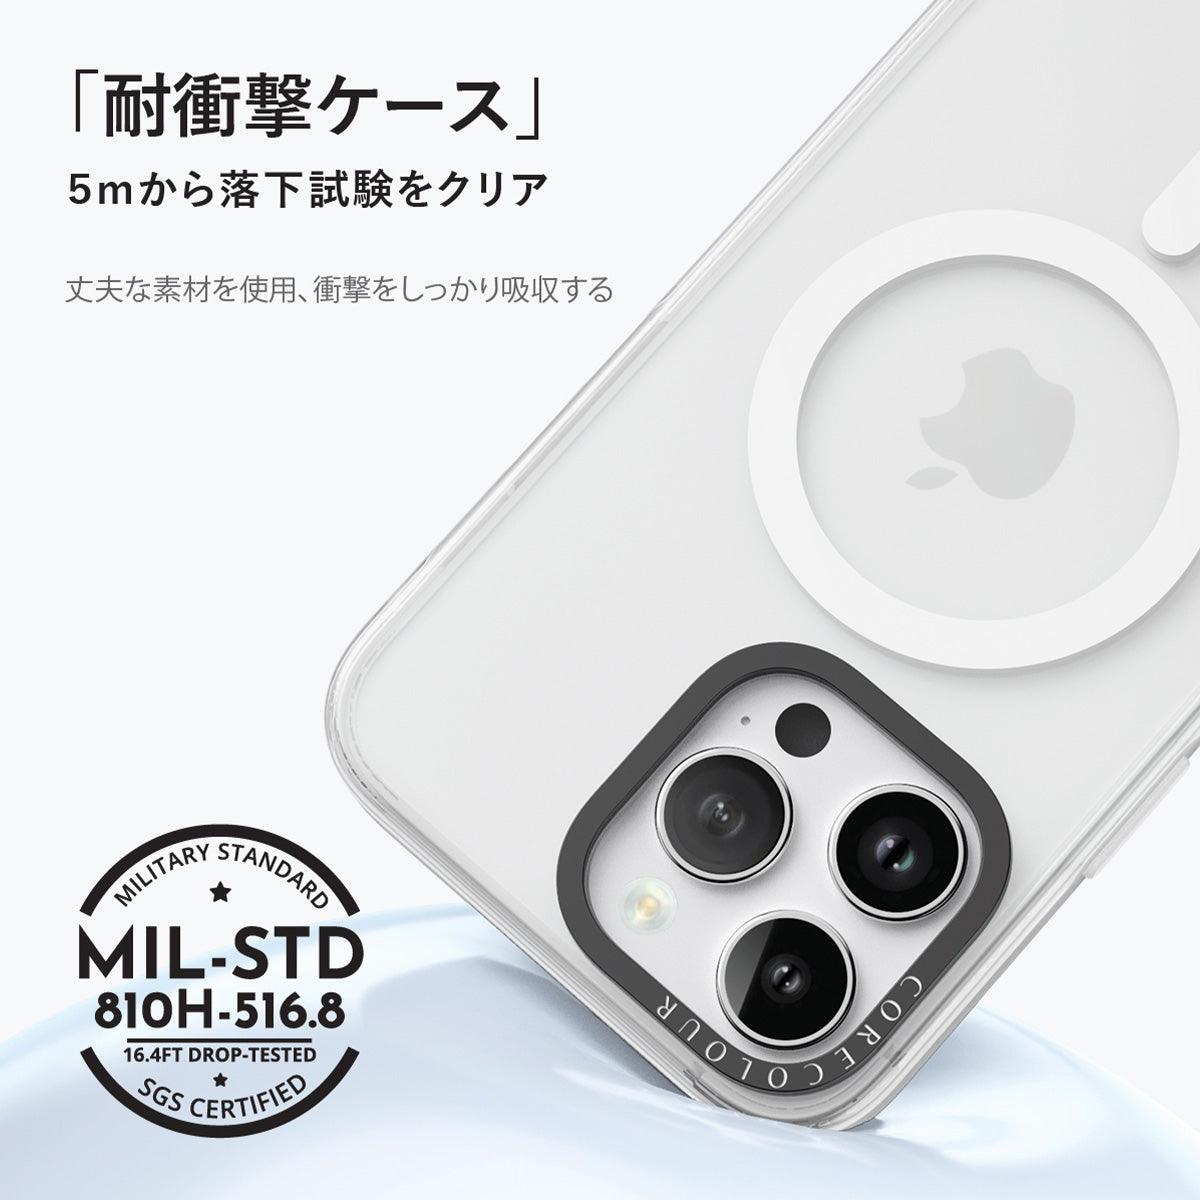 iPhone 12 Pro Max キラキラ スマイル! スマホケース - CORECOLOUR